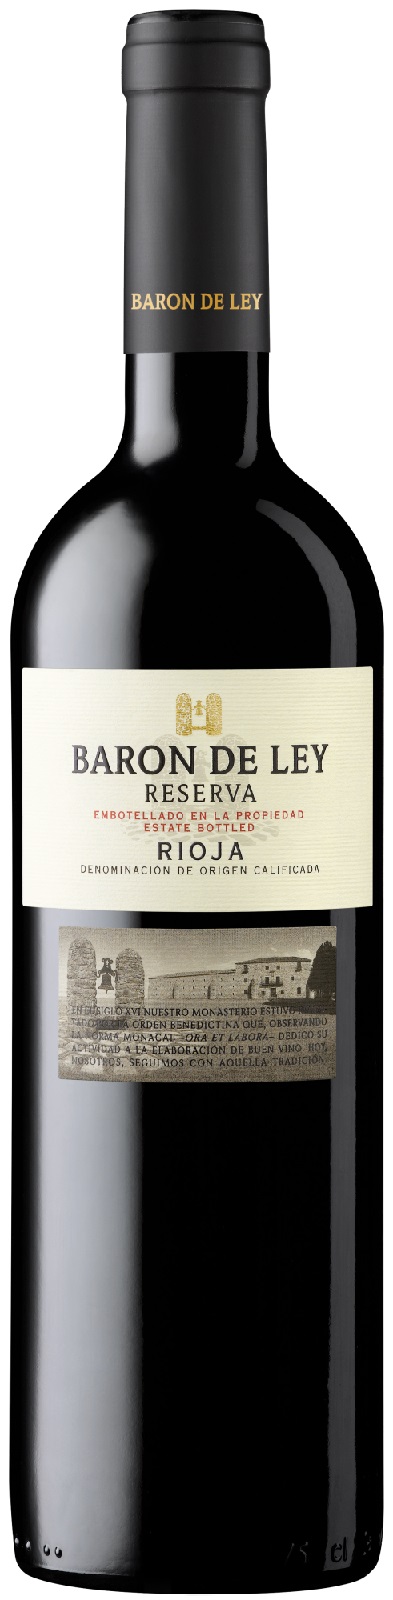 2018-Baron de ley Rioja Reserva Tinto Magnum